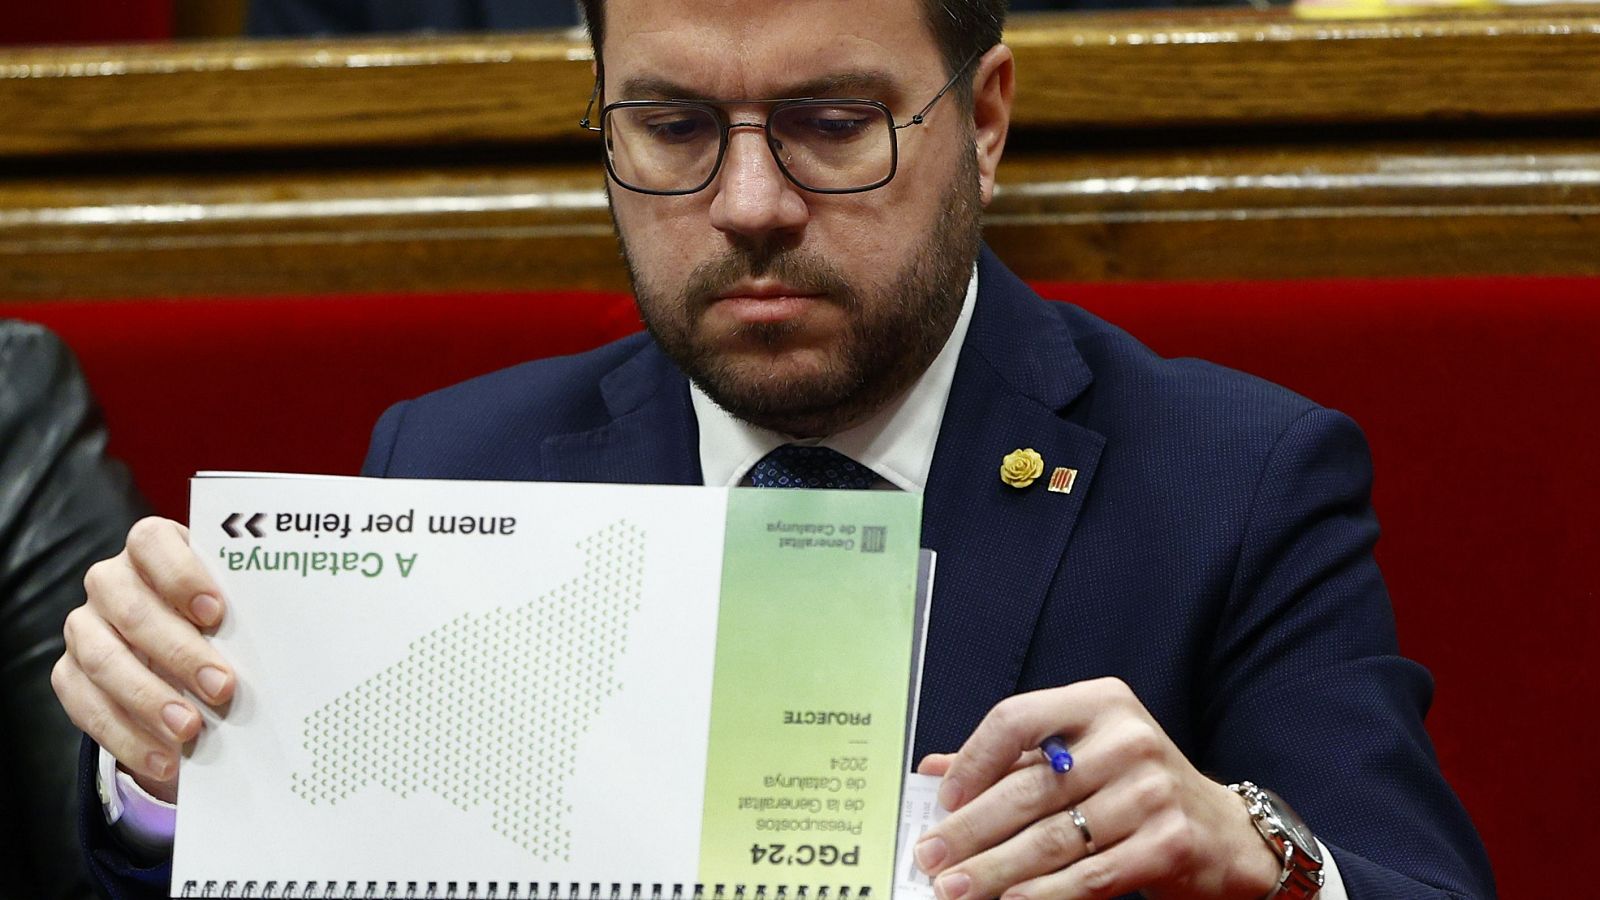 Los partidos catalanes valoran el adelanto electoral y ponen la mirada en el 12M